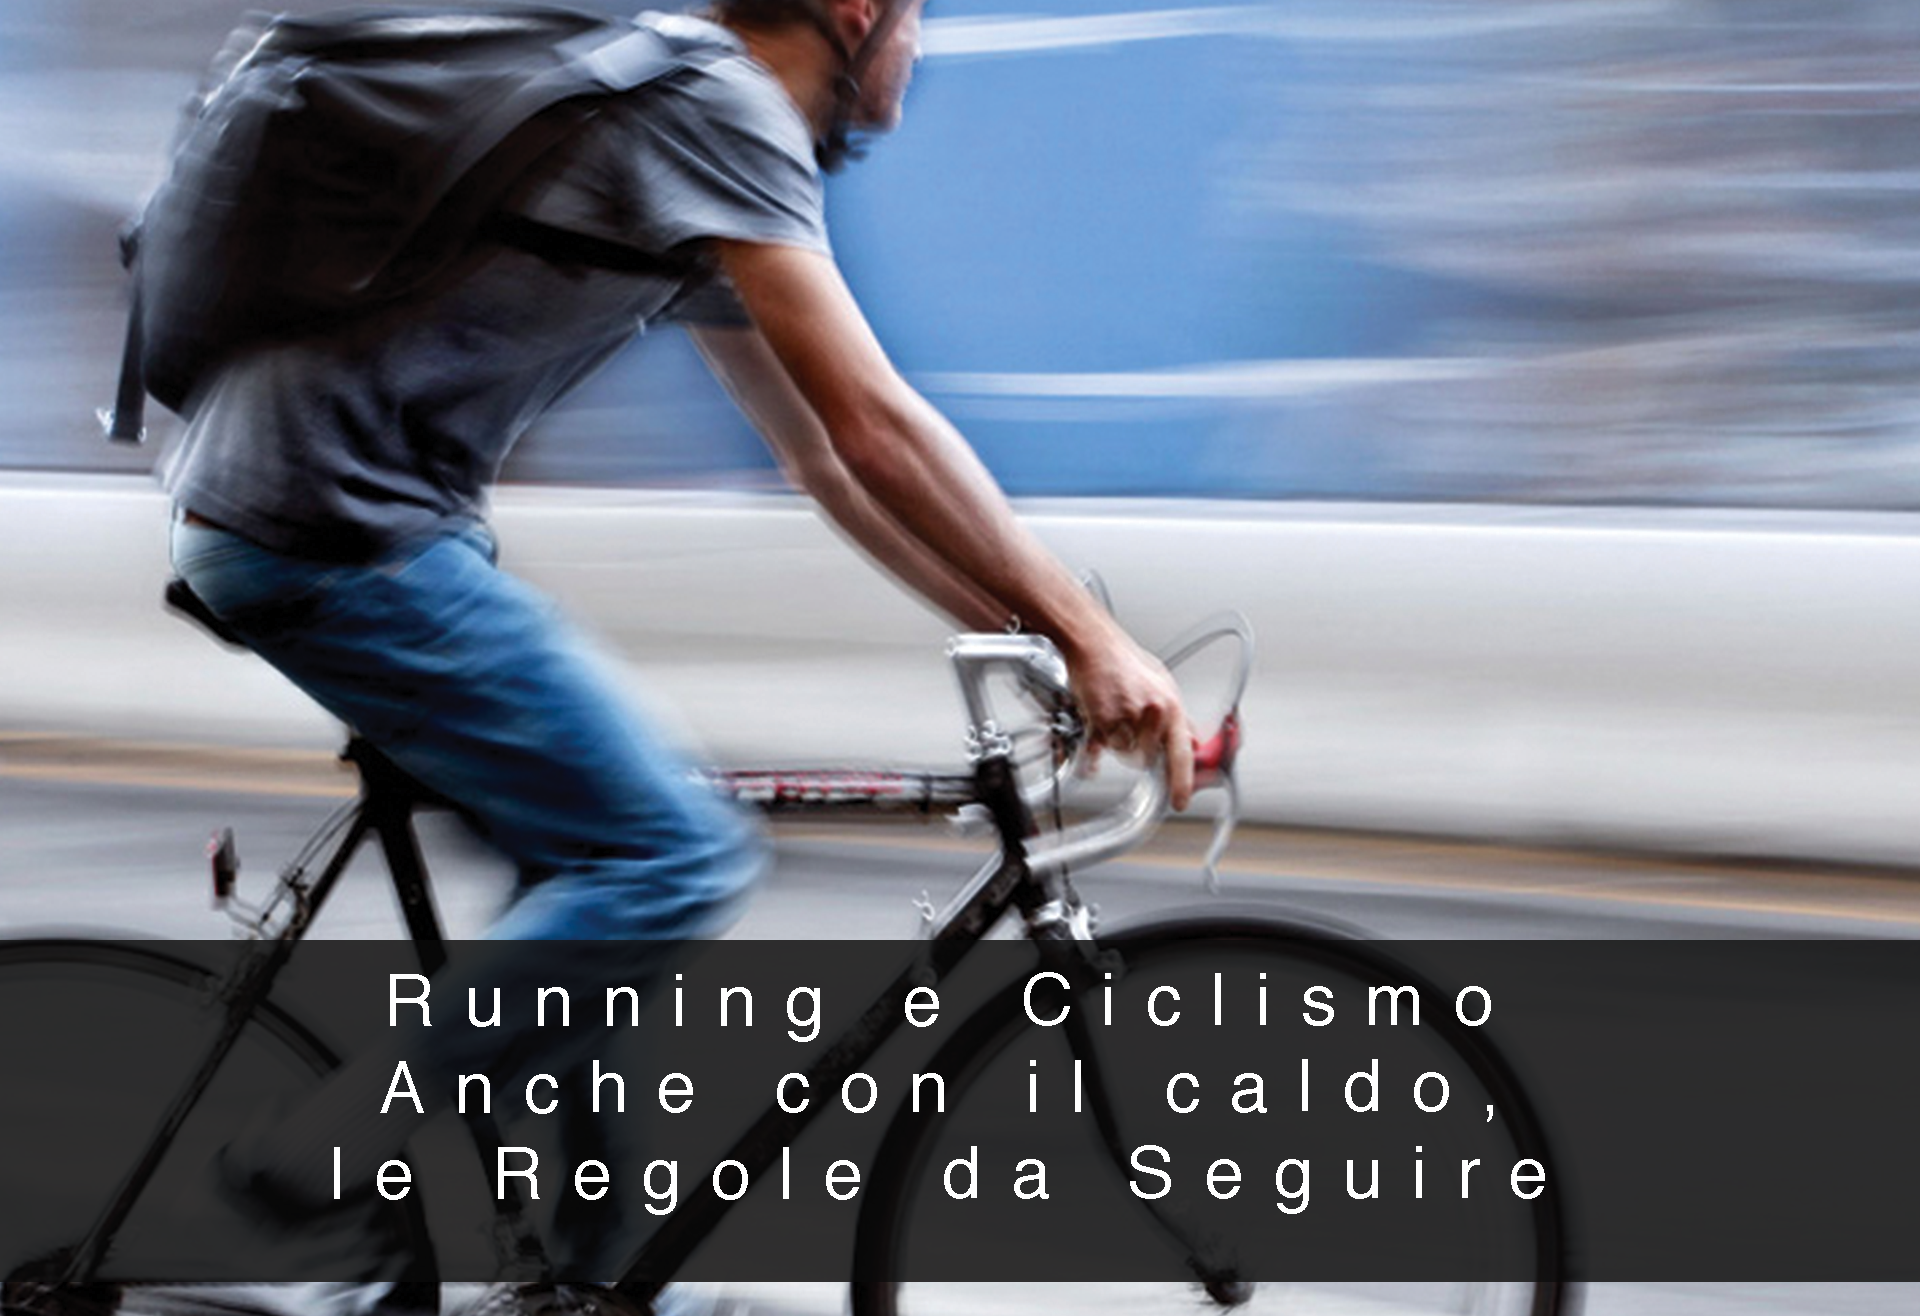 RUNNING E CICLISMO ANCHE CON IL CALDO, LE REGOLE DA SEGUIRE